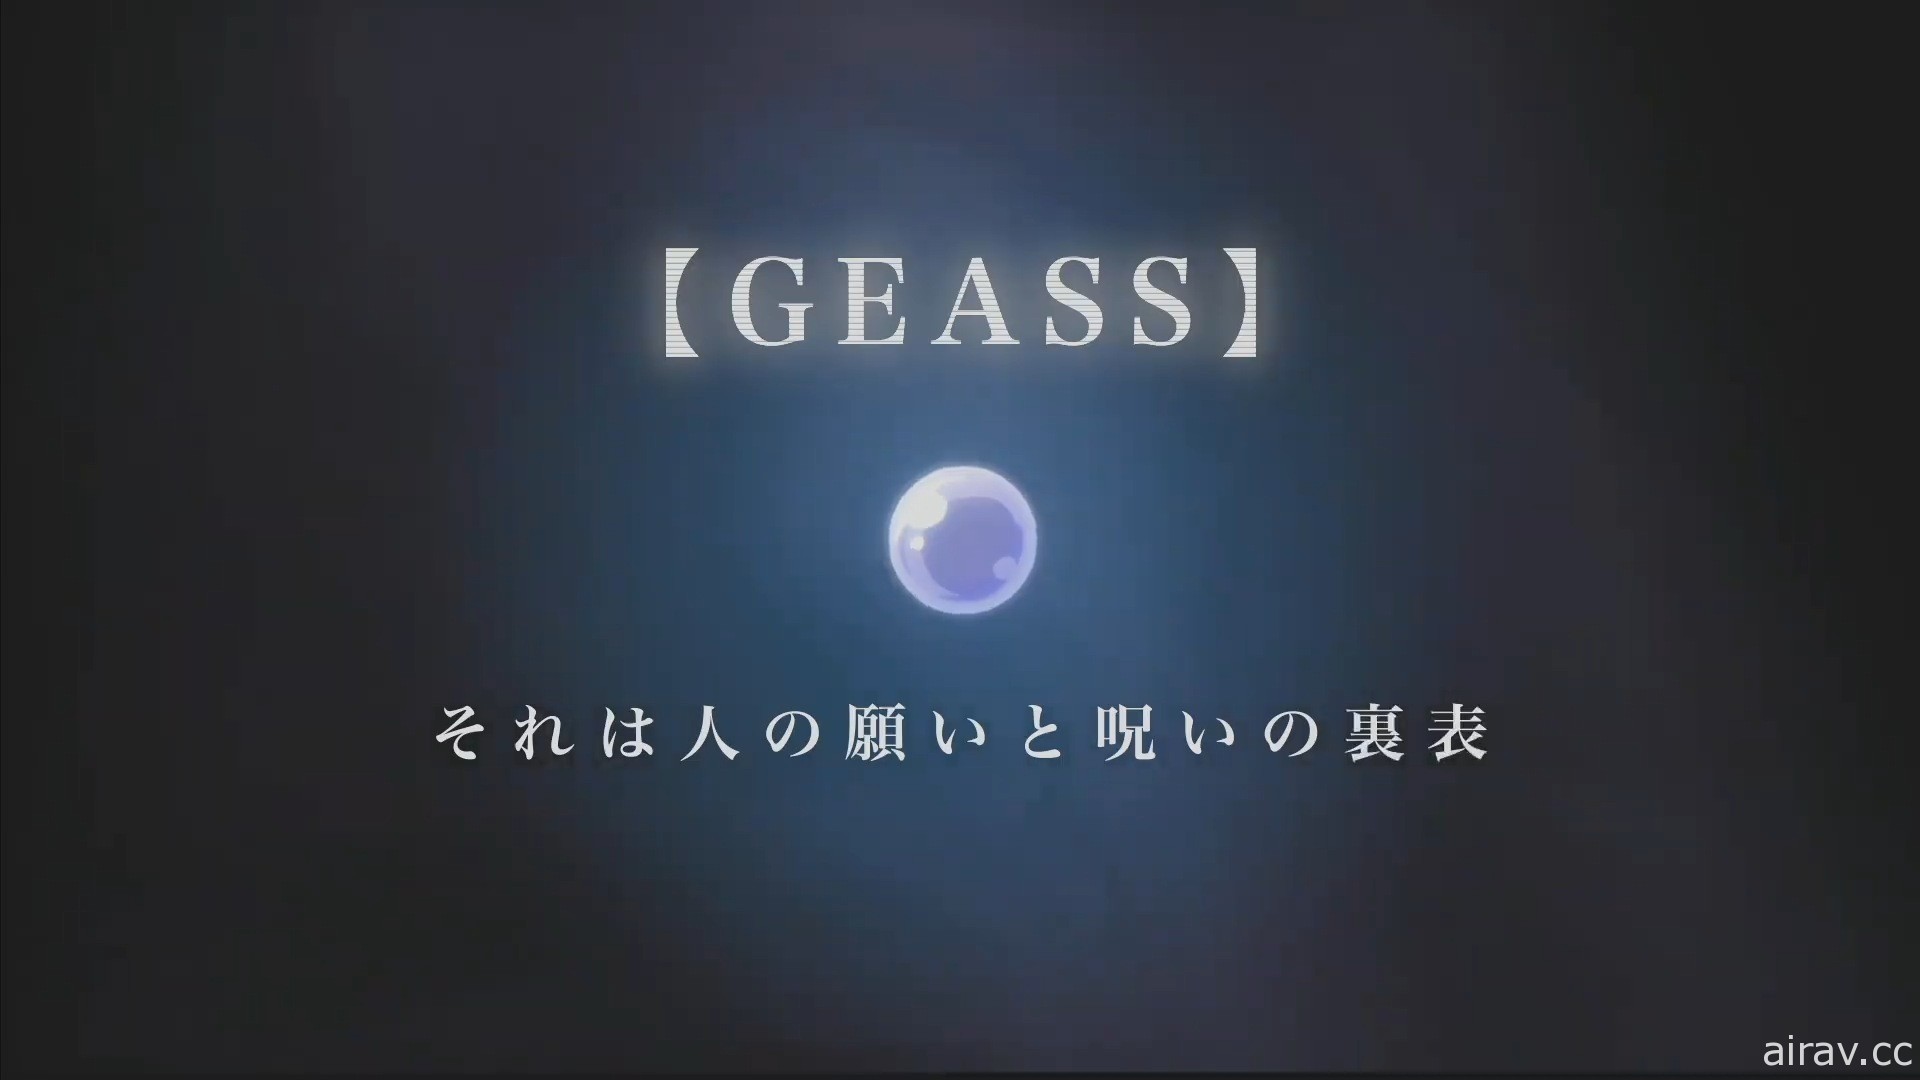 《Code Geass》发表会 动画“夺回的 Z”游戏“enesic Re;CODE”同步发表